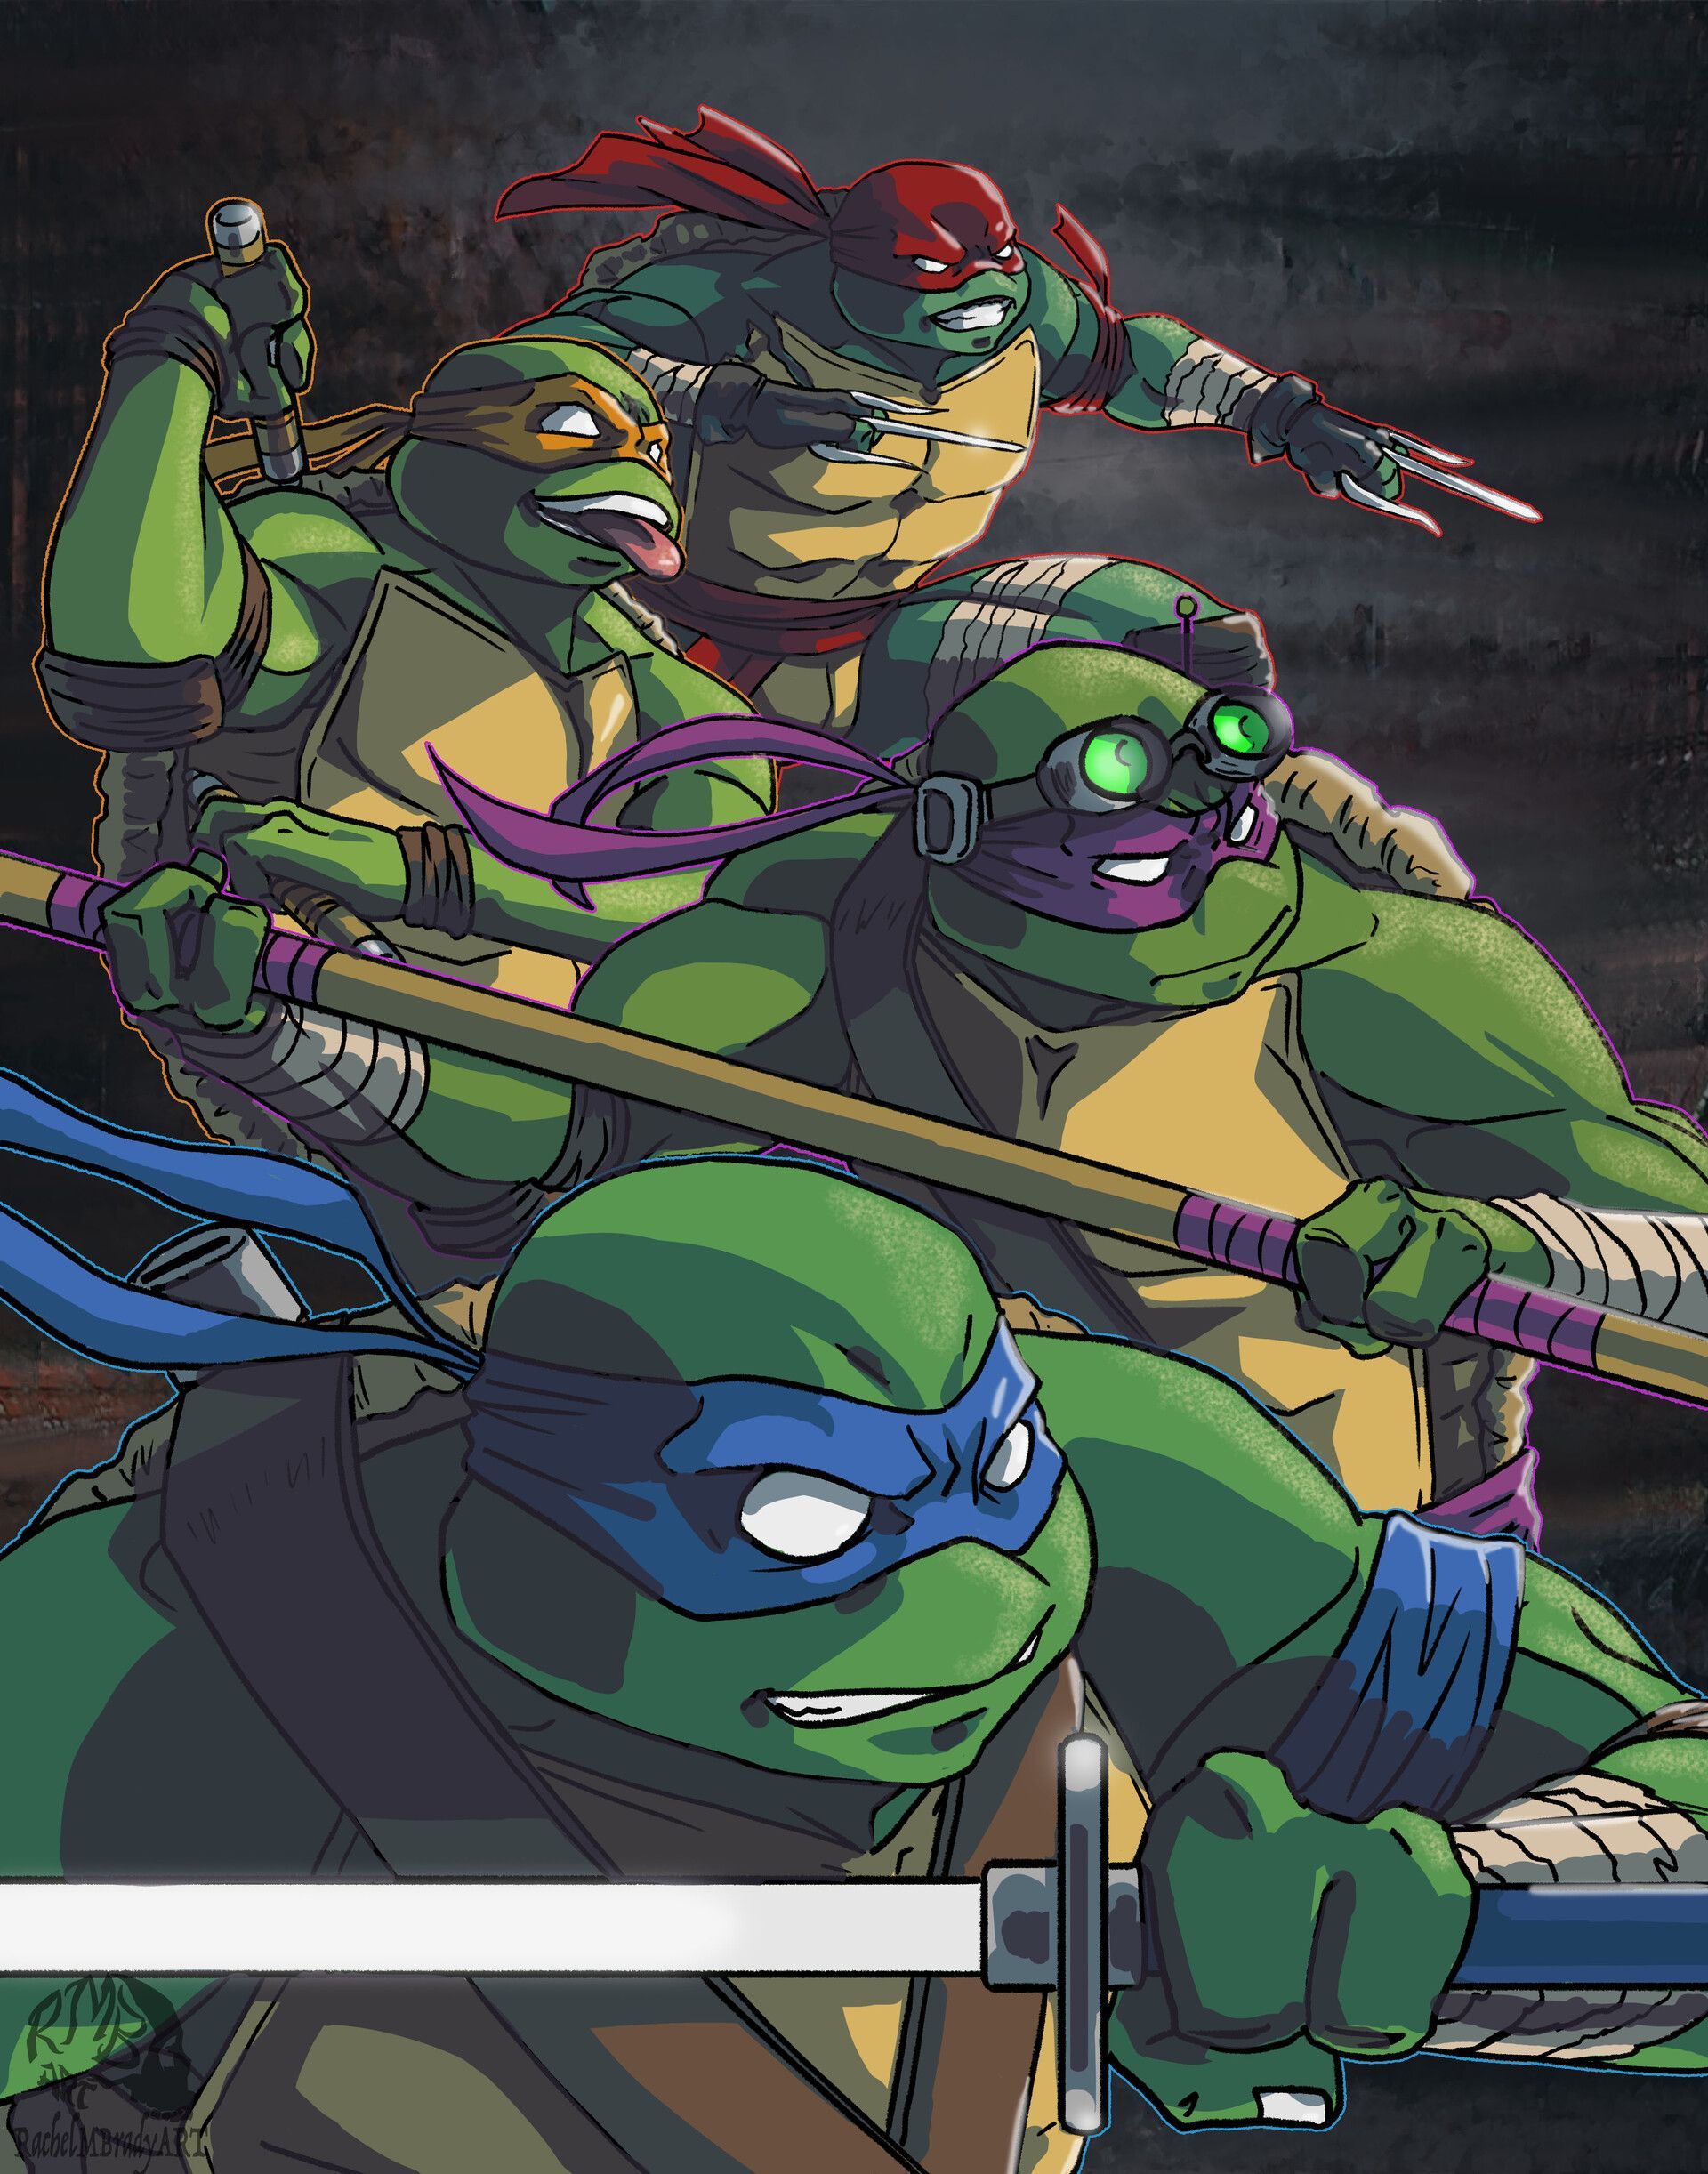 Teenage Mutant Ninja Turtles. Teenage mutant ninja turtles artwork, Ninja turtles artwork, Teenage mutant ninja turtles art